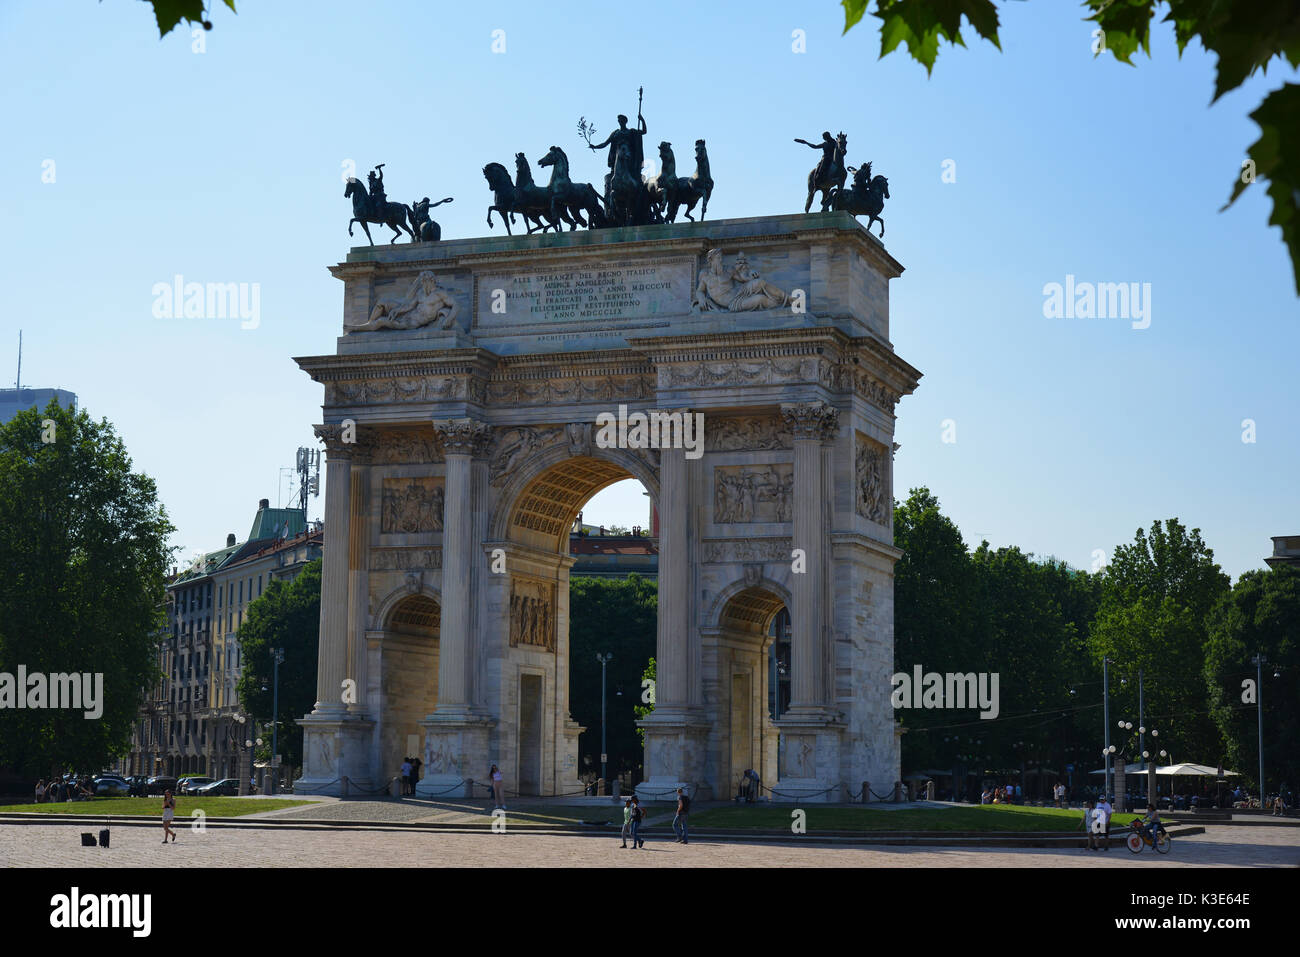 Schöne Arco del Tempo auf der Piazza Sempione, der Eingang zum berühmten Parco Sempione, dem grünen Herzen von Mailand in Italien. Stockfoto